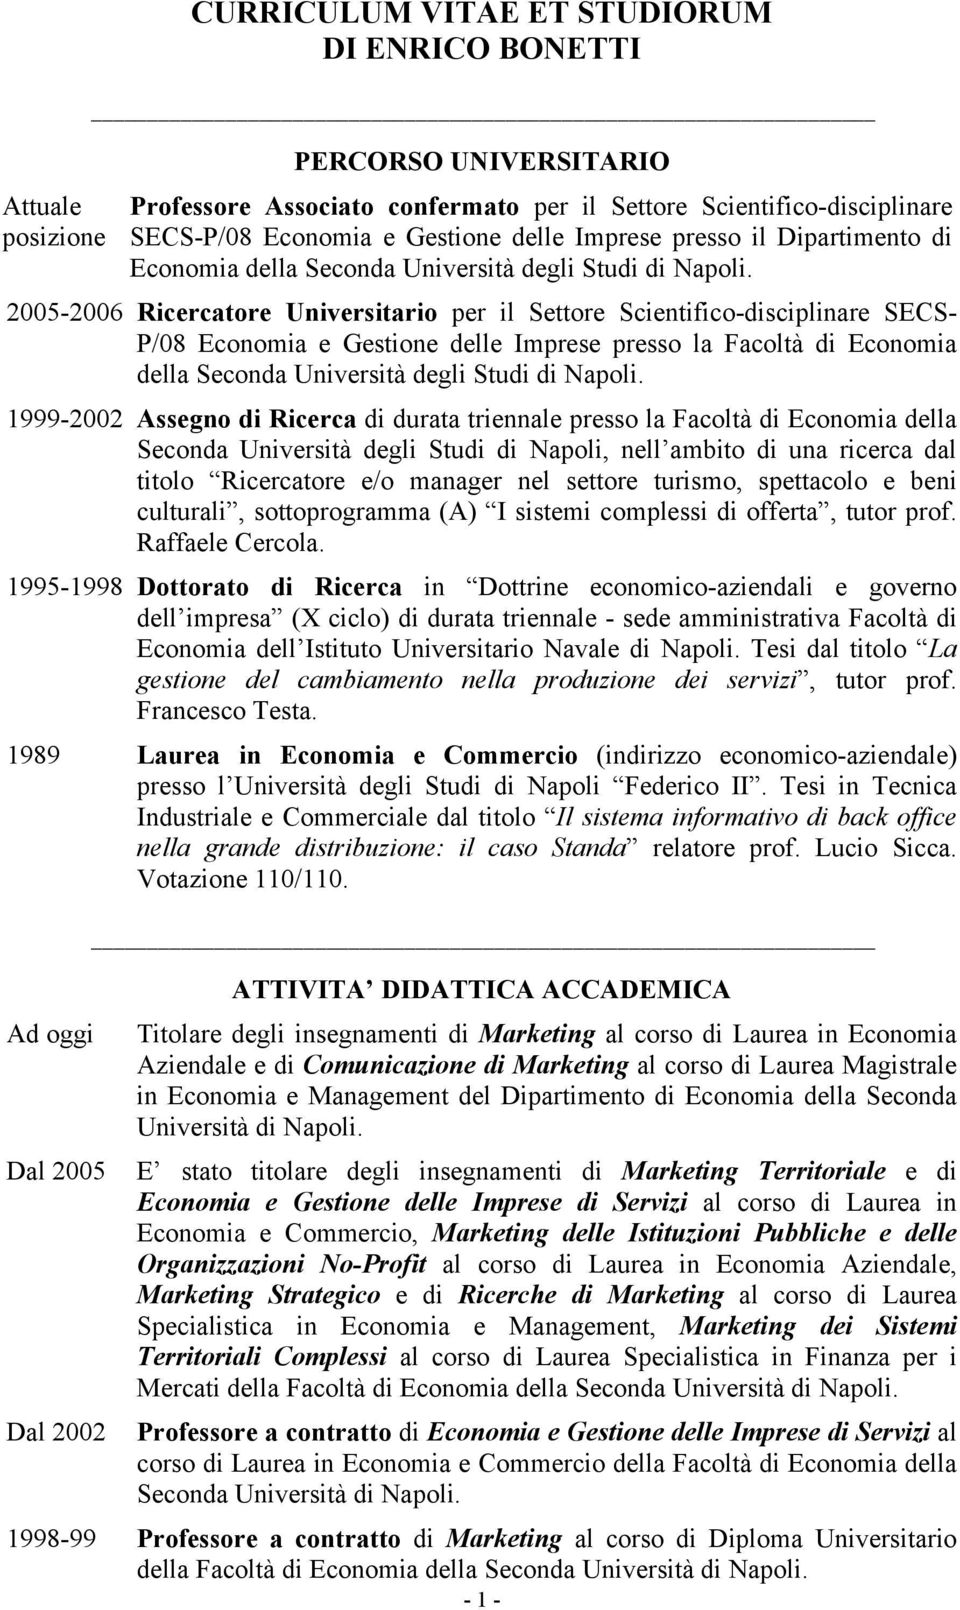 2005-2006 Ricercatore Universitario per il Settore Scientifico-disciplinare SECS- P/08 Economia e Gestione delle Imprese presso la Facoltà di Economia della Seconda Università degli Studi di Napoli.